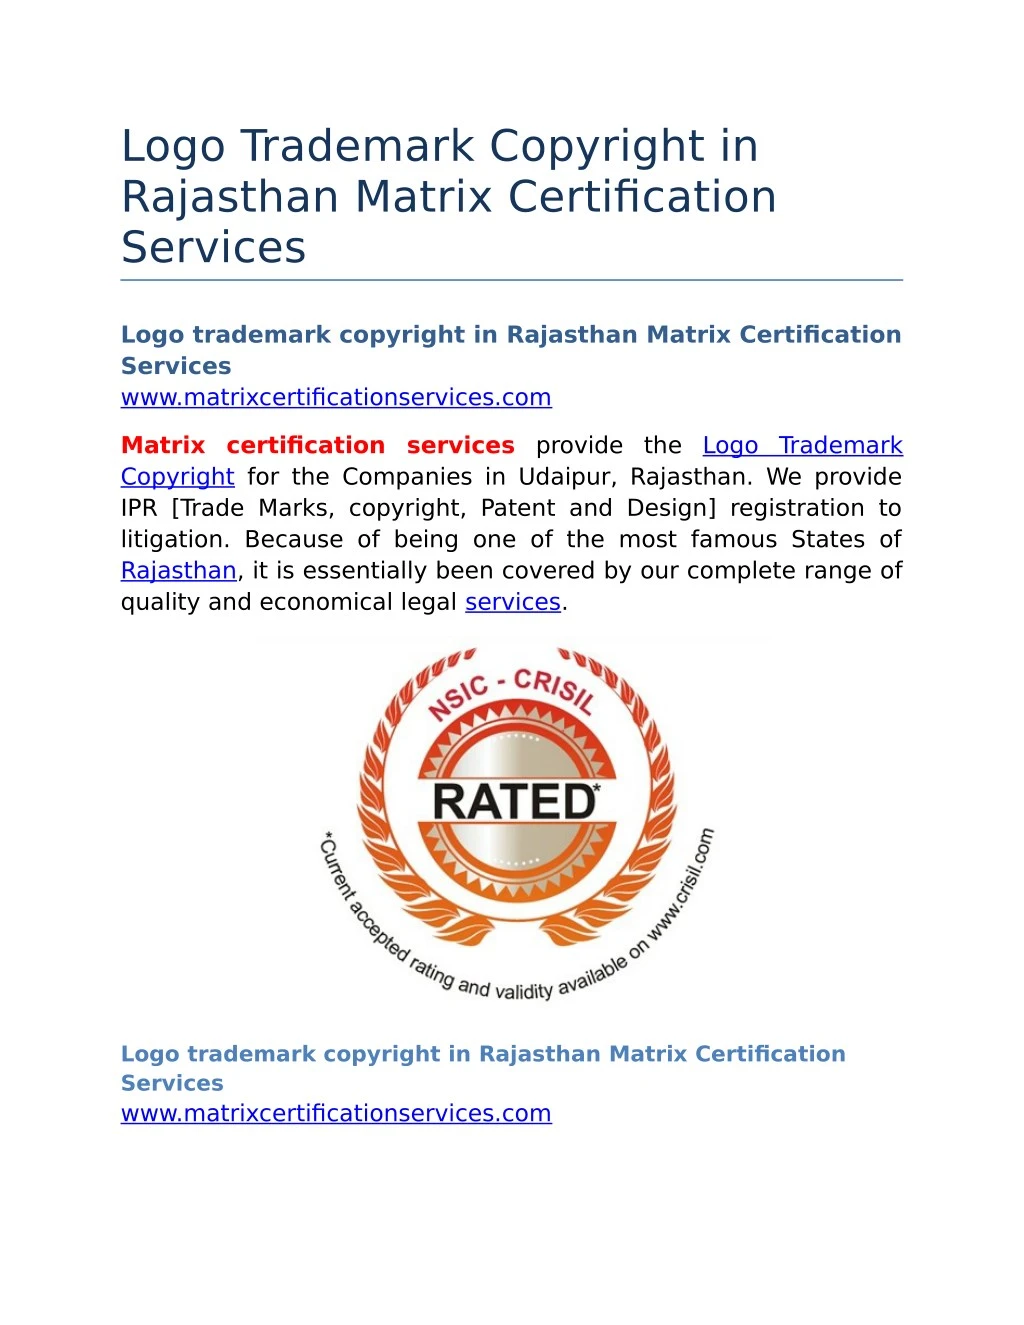 logo trademark copyright in rajasthan matrix